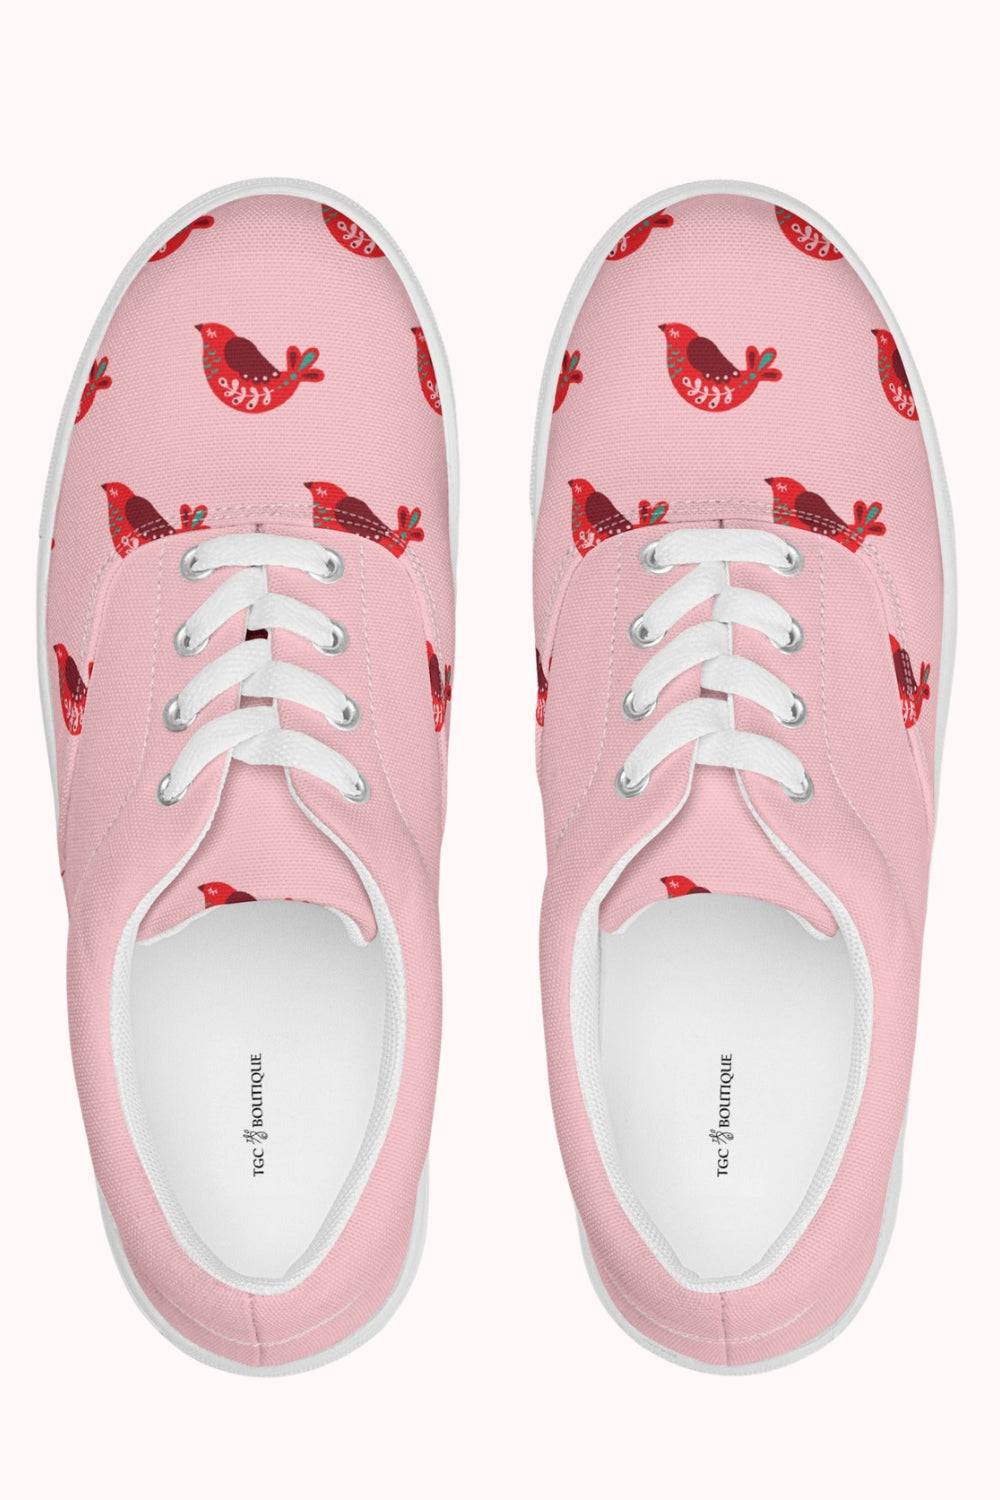 Lace Up Pink Canvas Shoes - TGC Boutique - Canvas Shoes